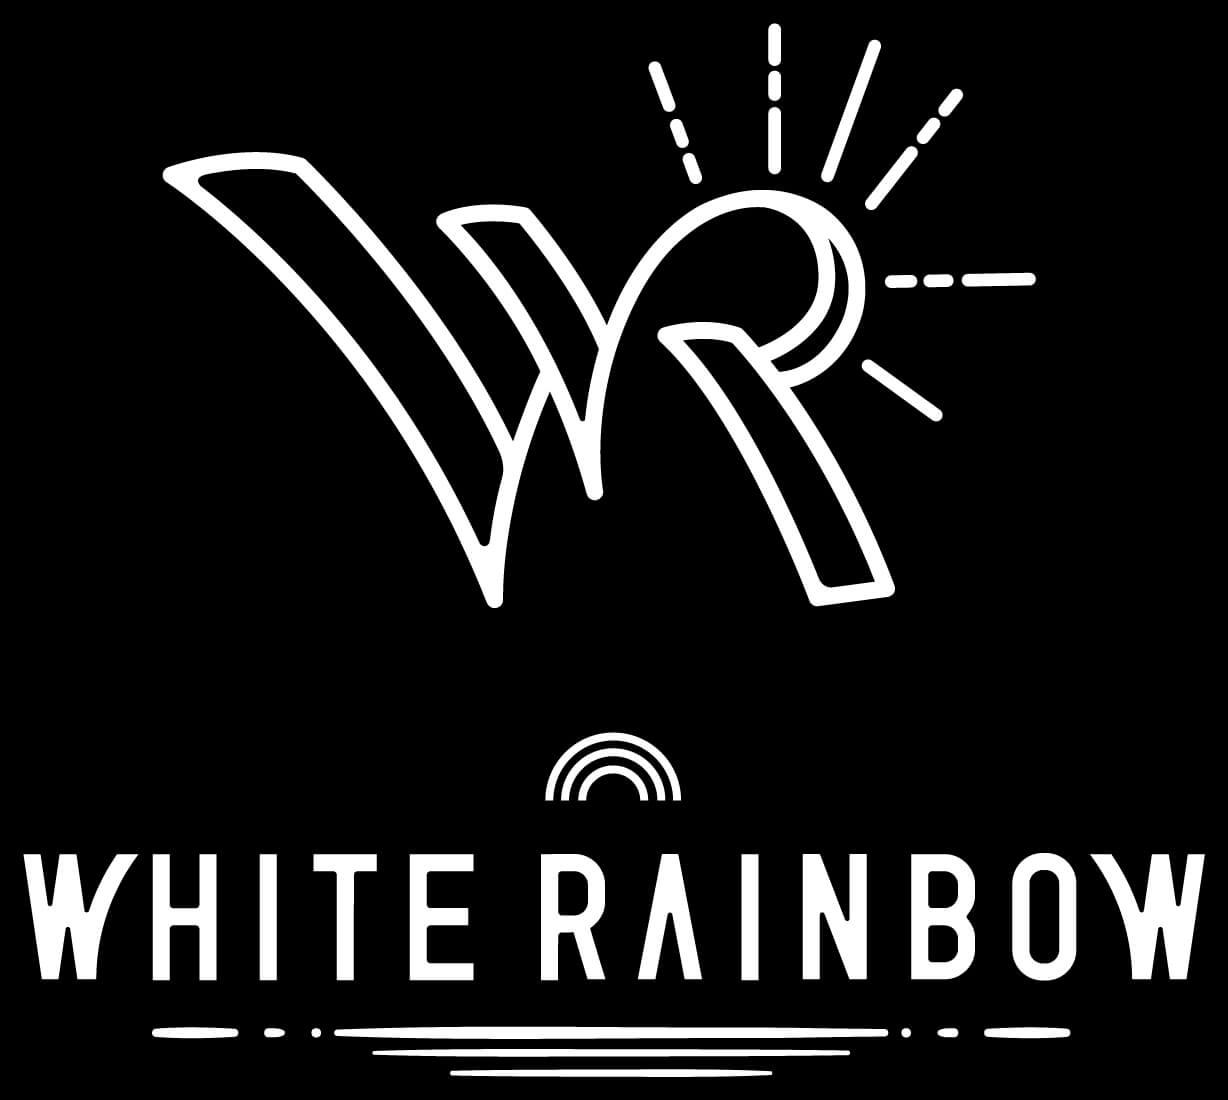 WHITE RAINBOWのロゴが完成しました